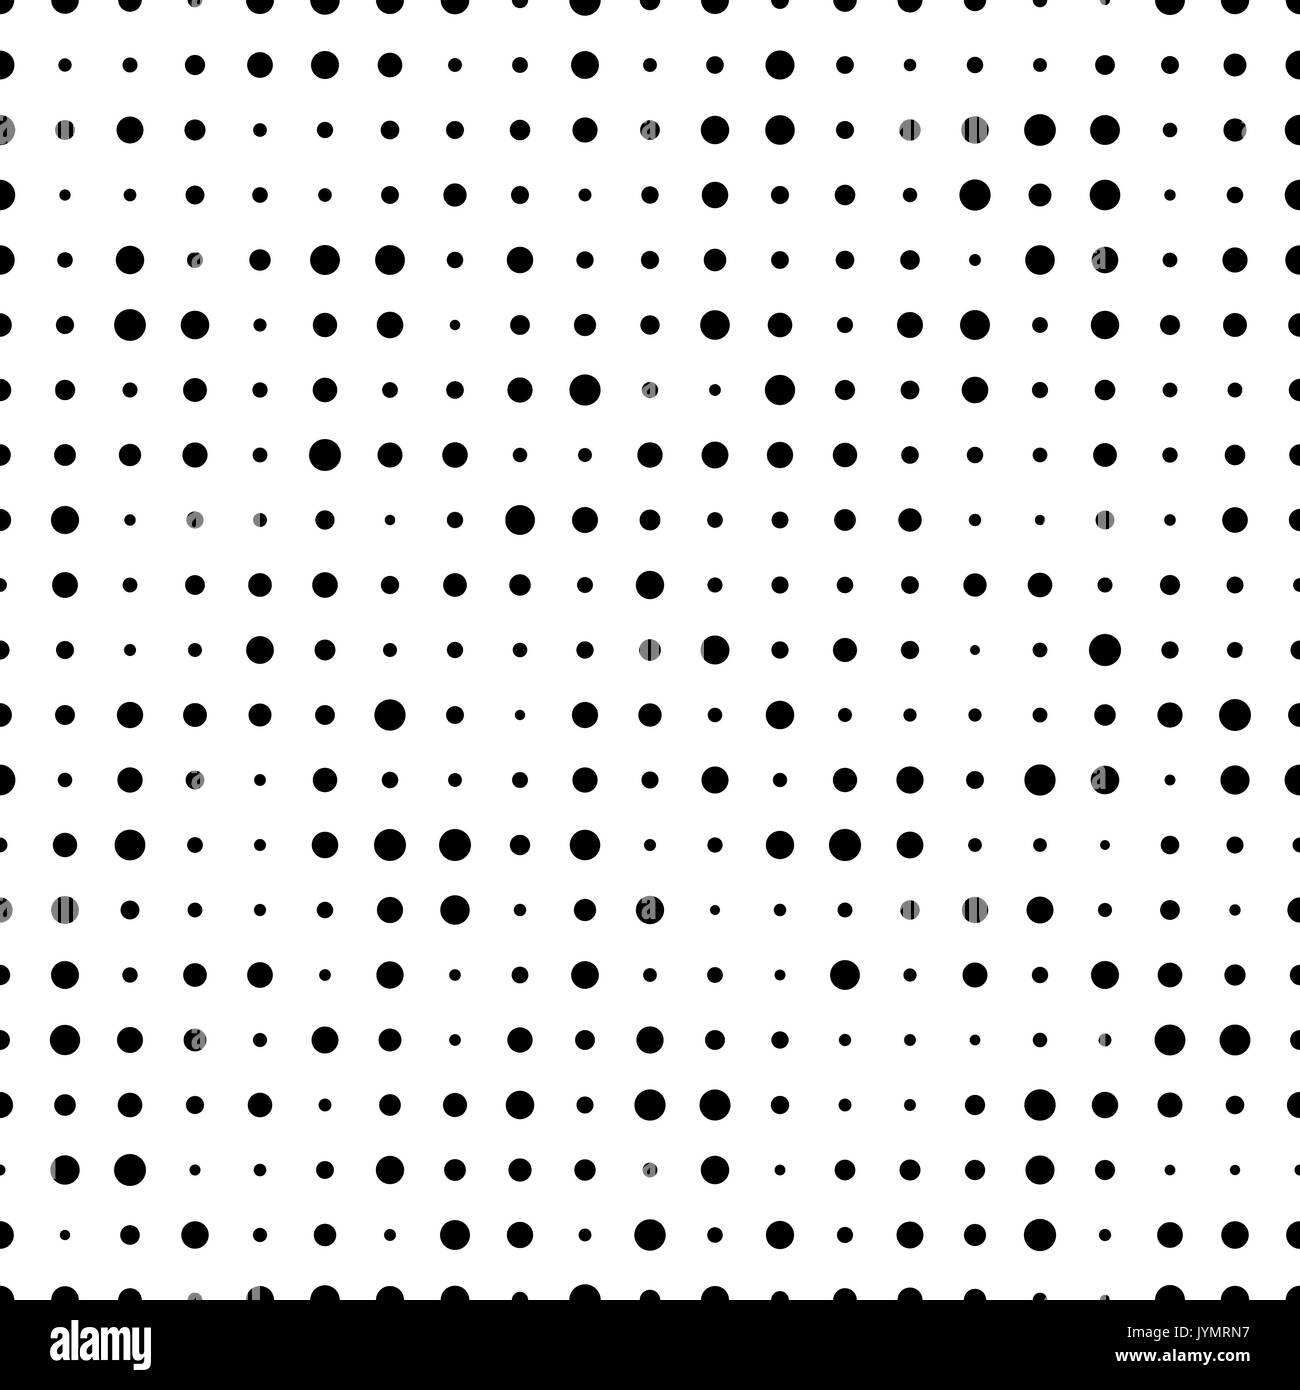 Nahtlose Muster mit kleinen Polka Dot Pattern. Gepunktete endlosen Kulisse. Retro vektor Hintergrund aus Kreisen. Stock Vektor